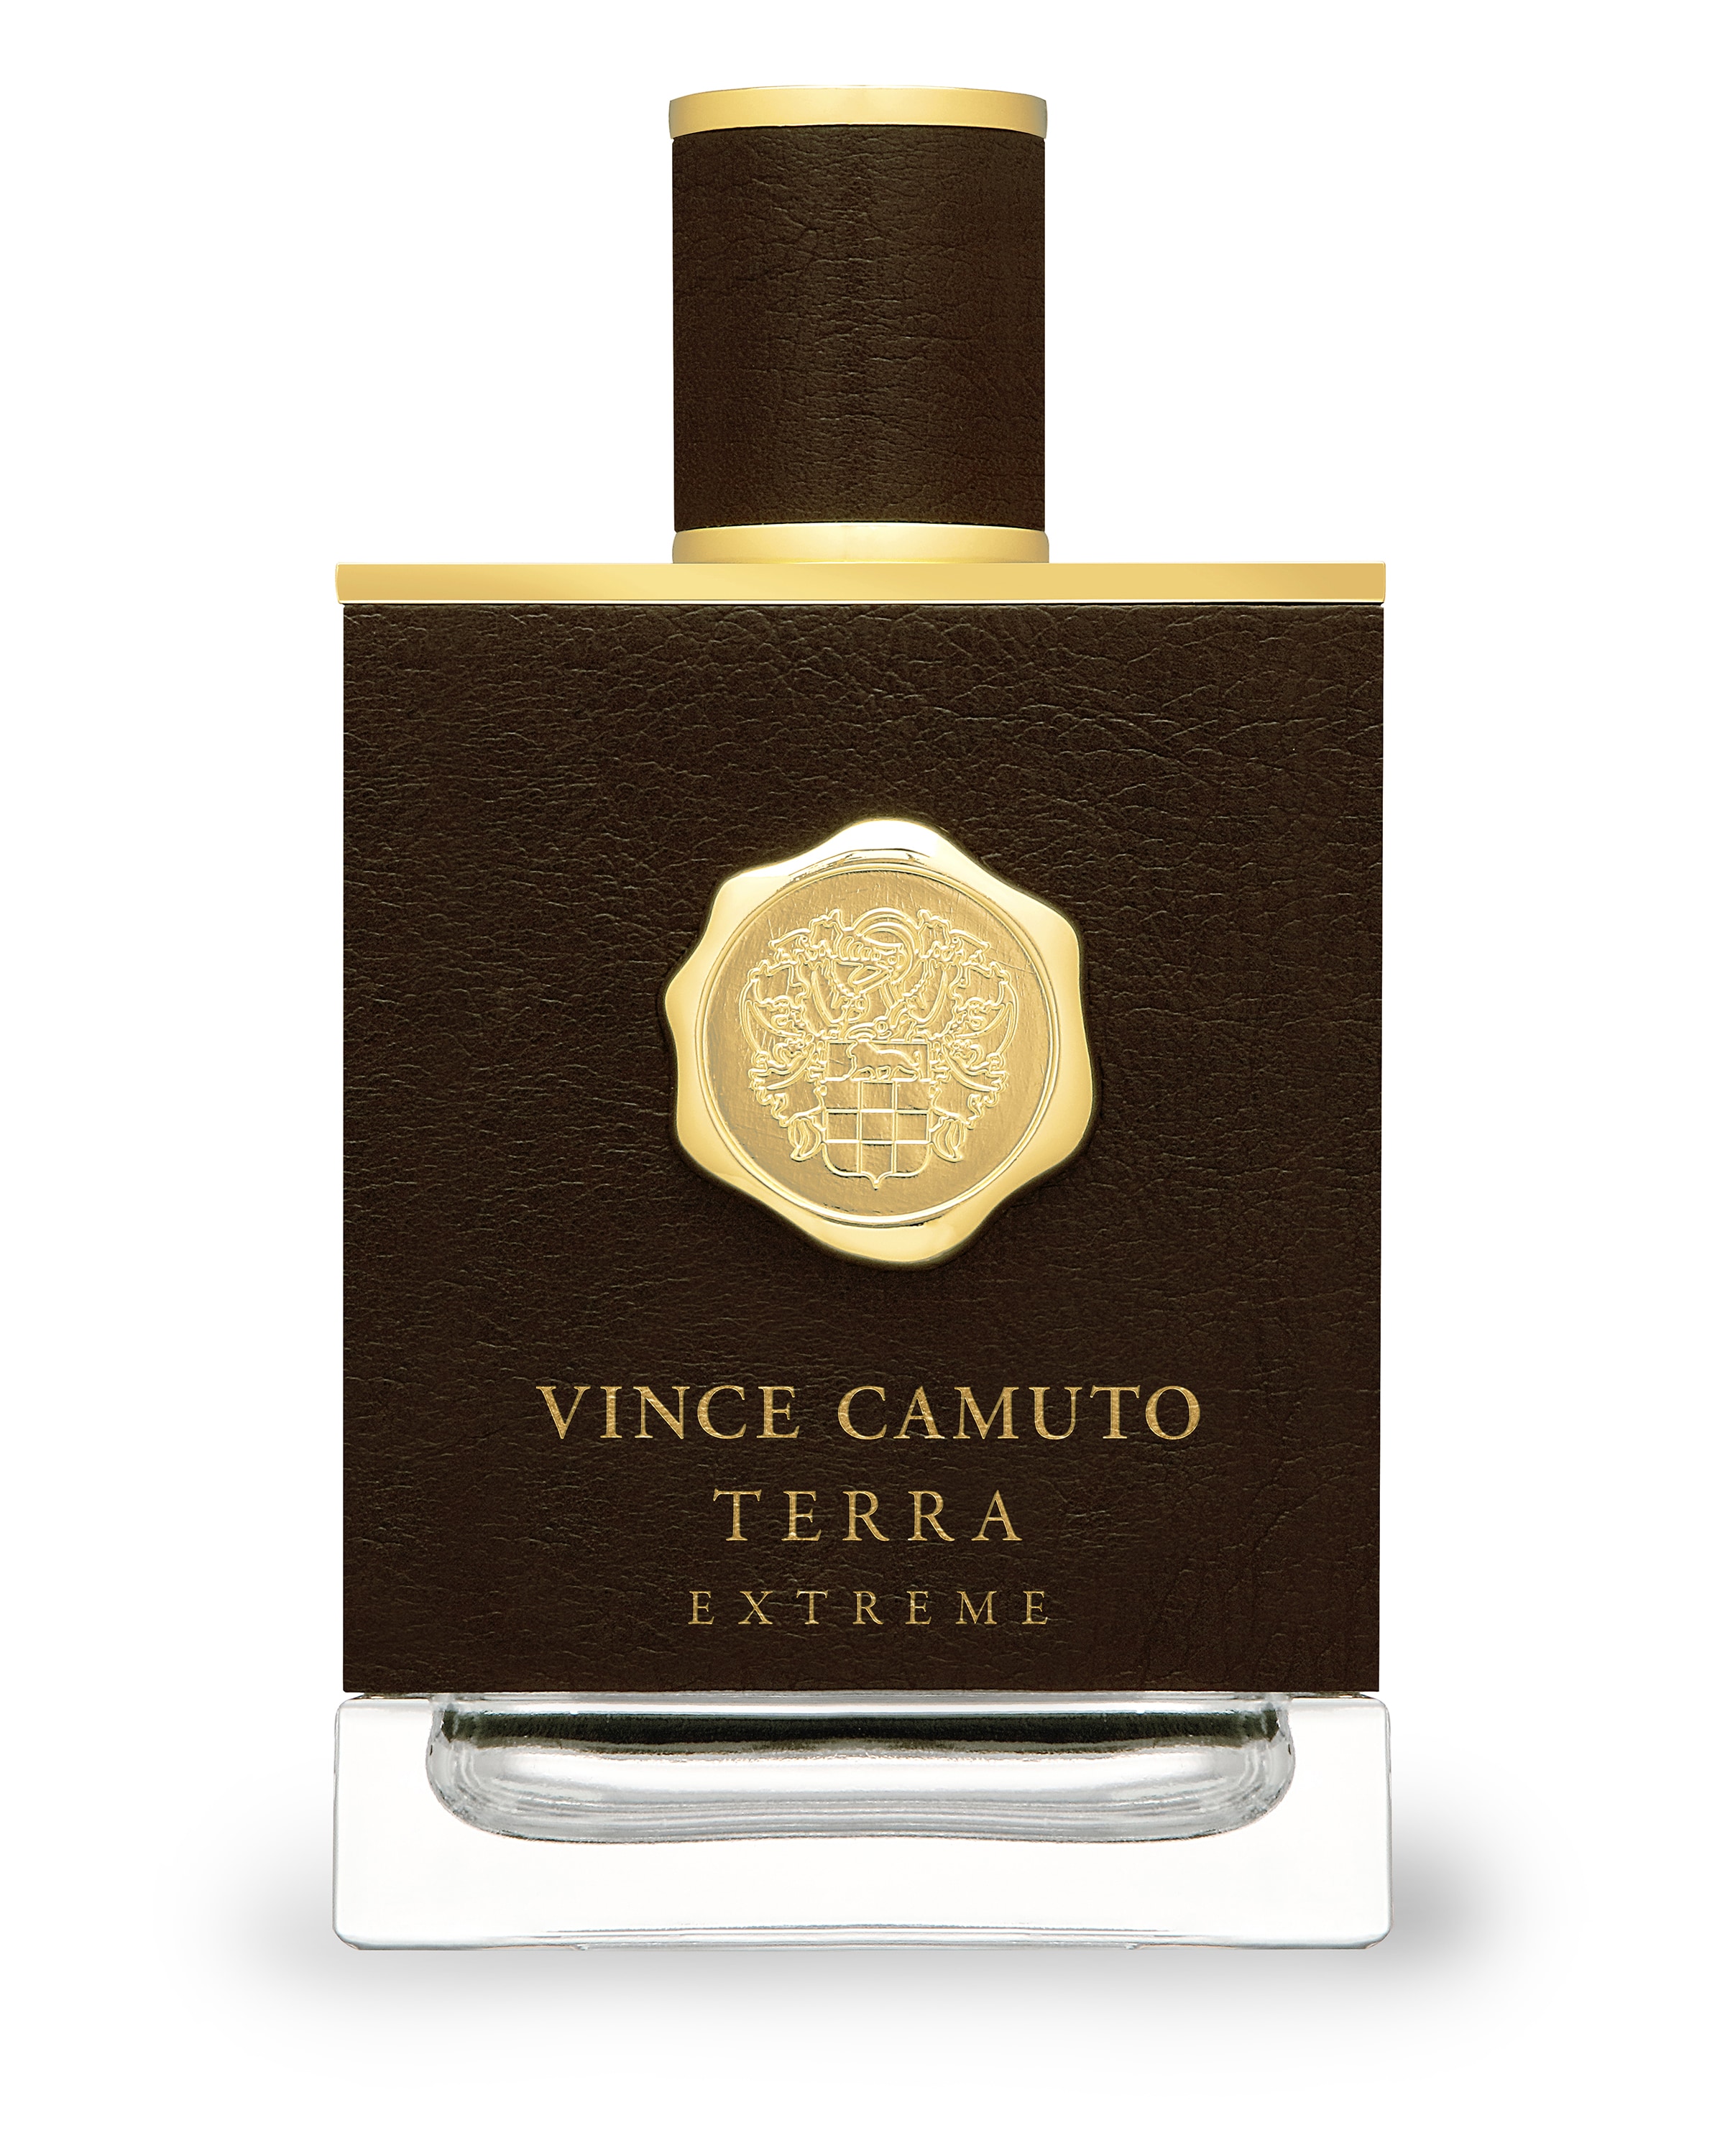 Vince Camuto Terra Extreme (EAU DE PARFUM) 1.5 ml. - i-Priss